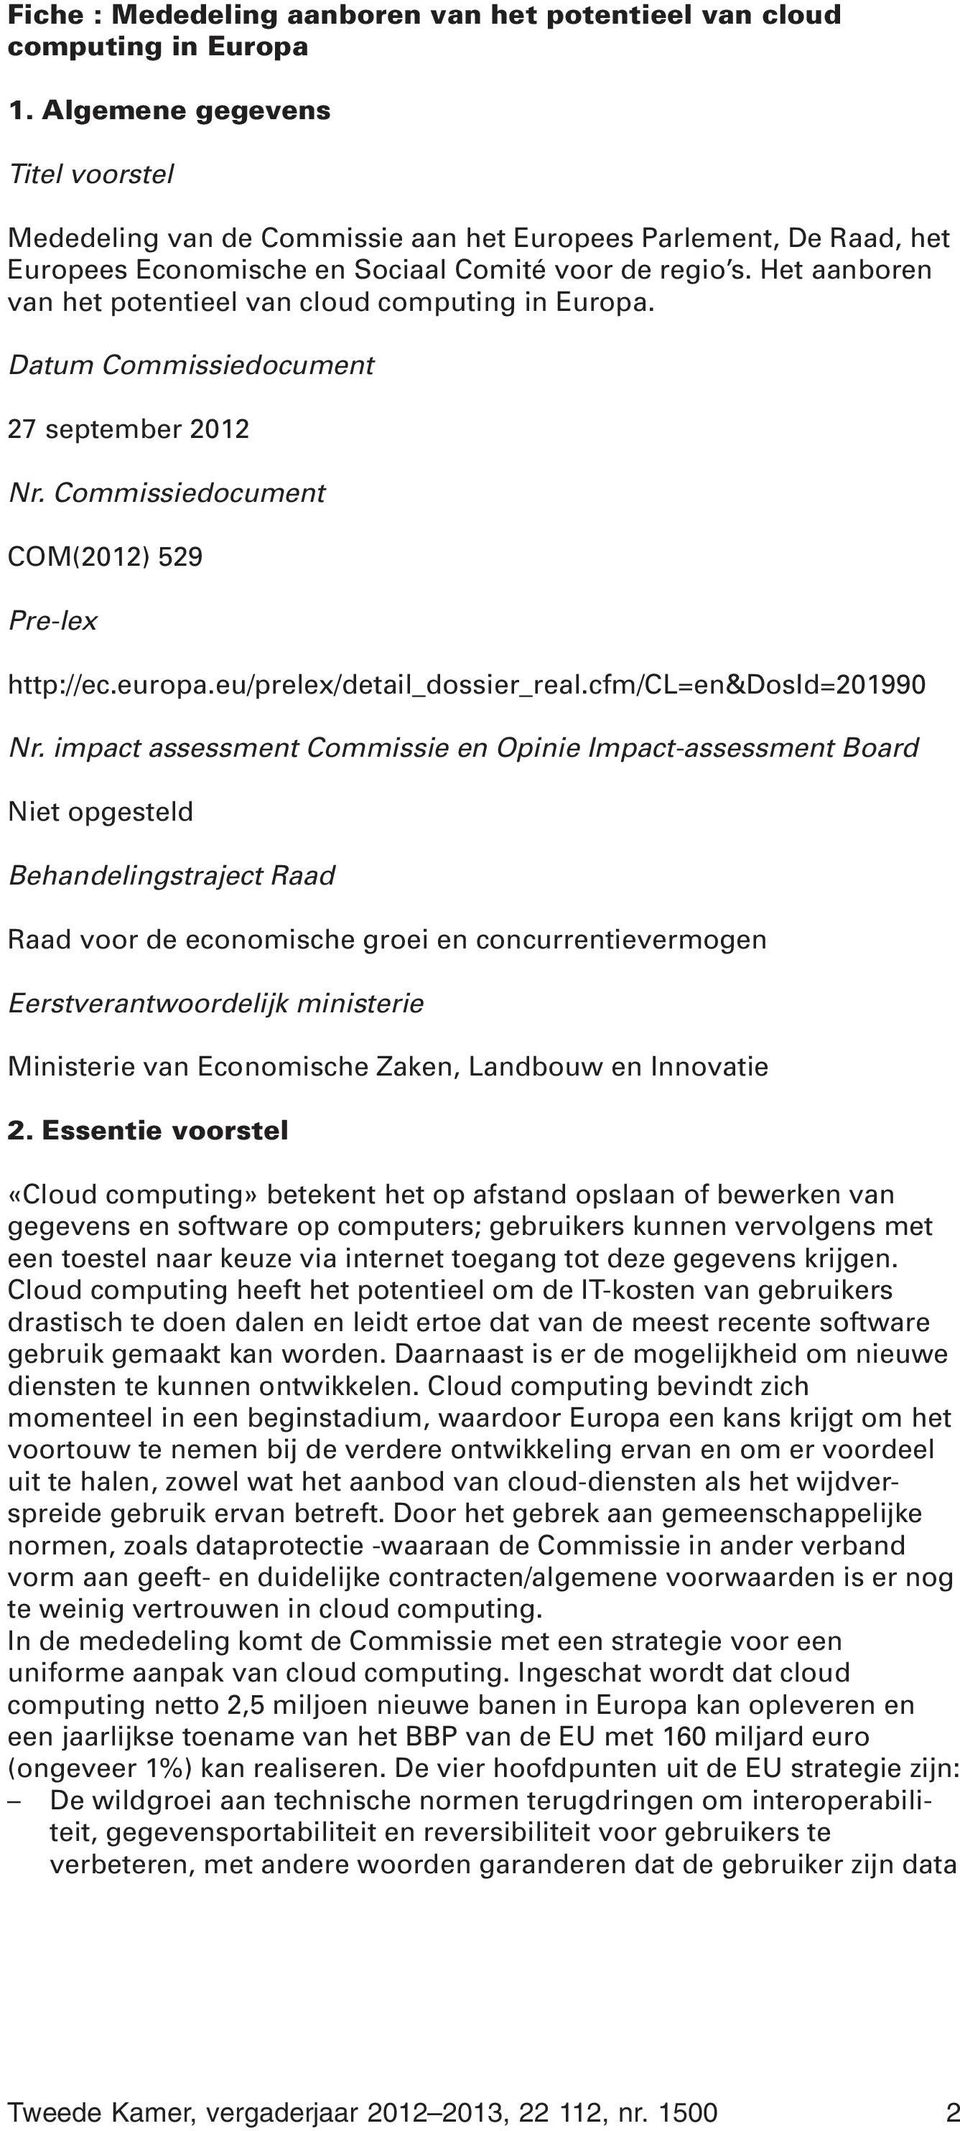 Het aanboren van het potentieel van cloud computing in Europa. Datum Commissiedocument 27 september 2012 Nr. Commissiedocument COM(2012) 529 Pre-lex http://ec.europa.eu/prelex/detail_dossier_real.